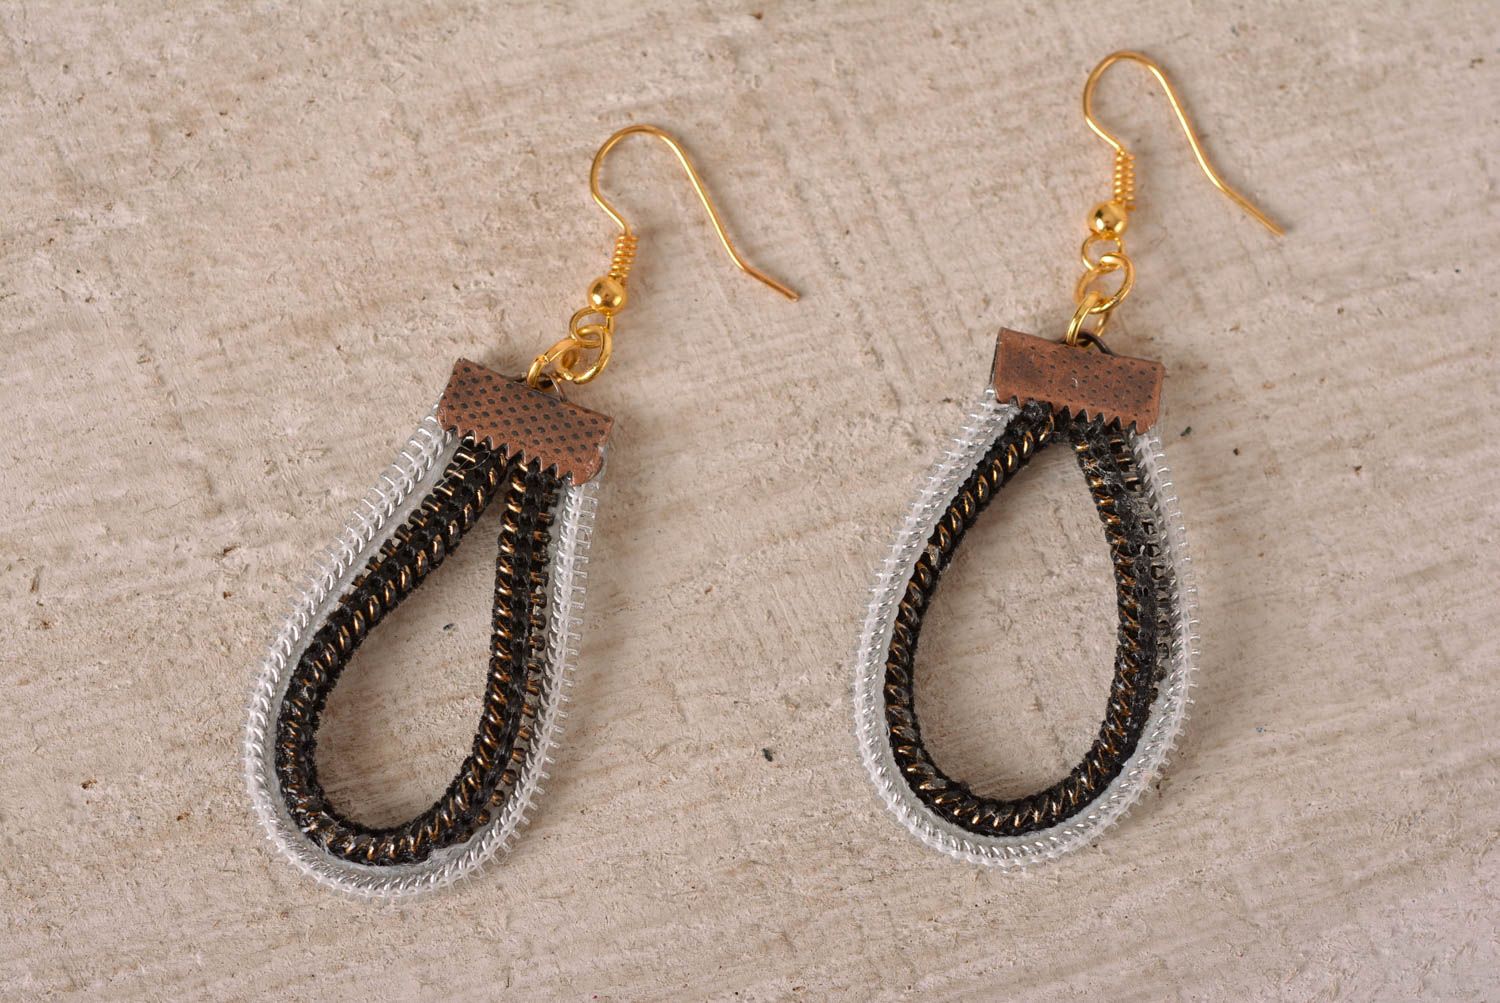 Handmade earrings designer jewelry unusual gift for girl long earrings photo 1